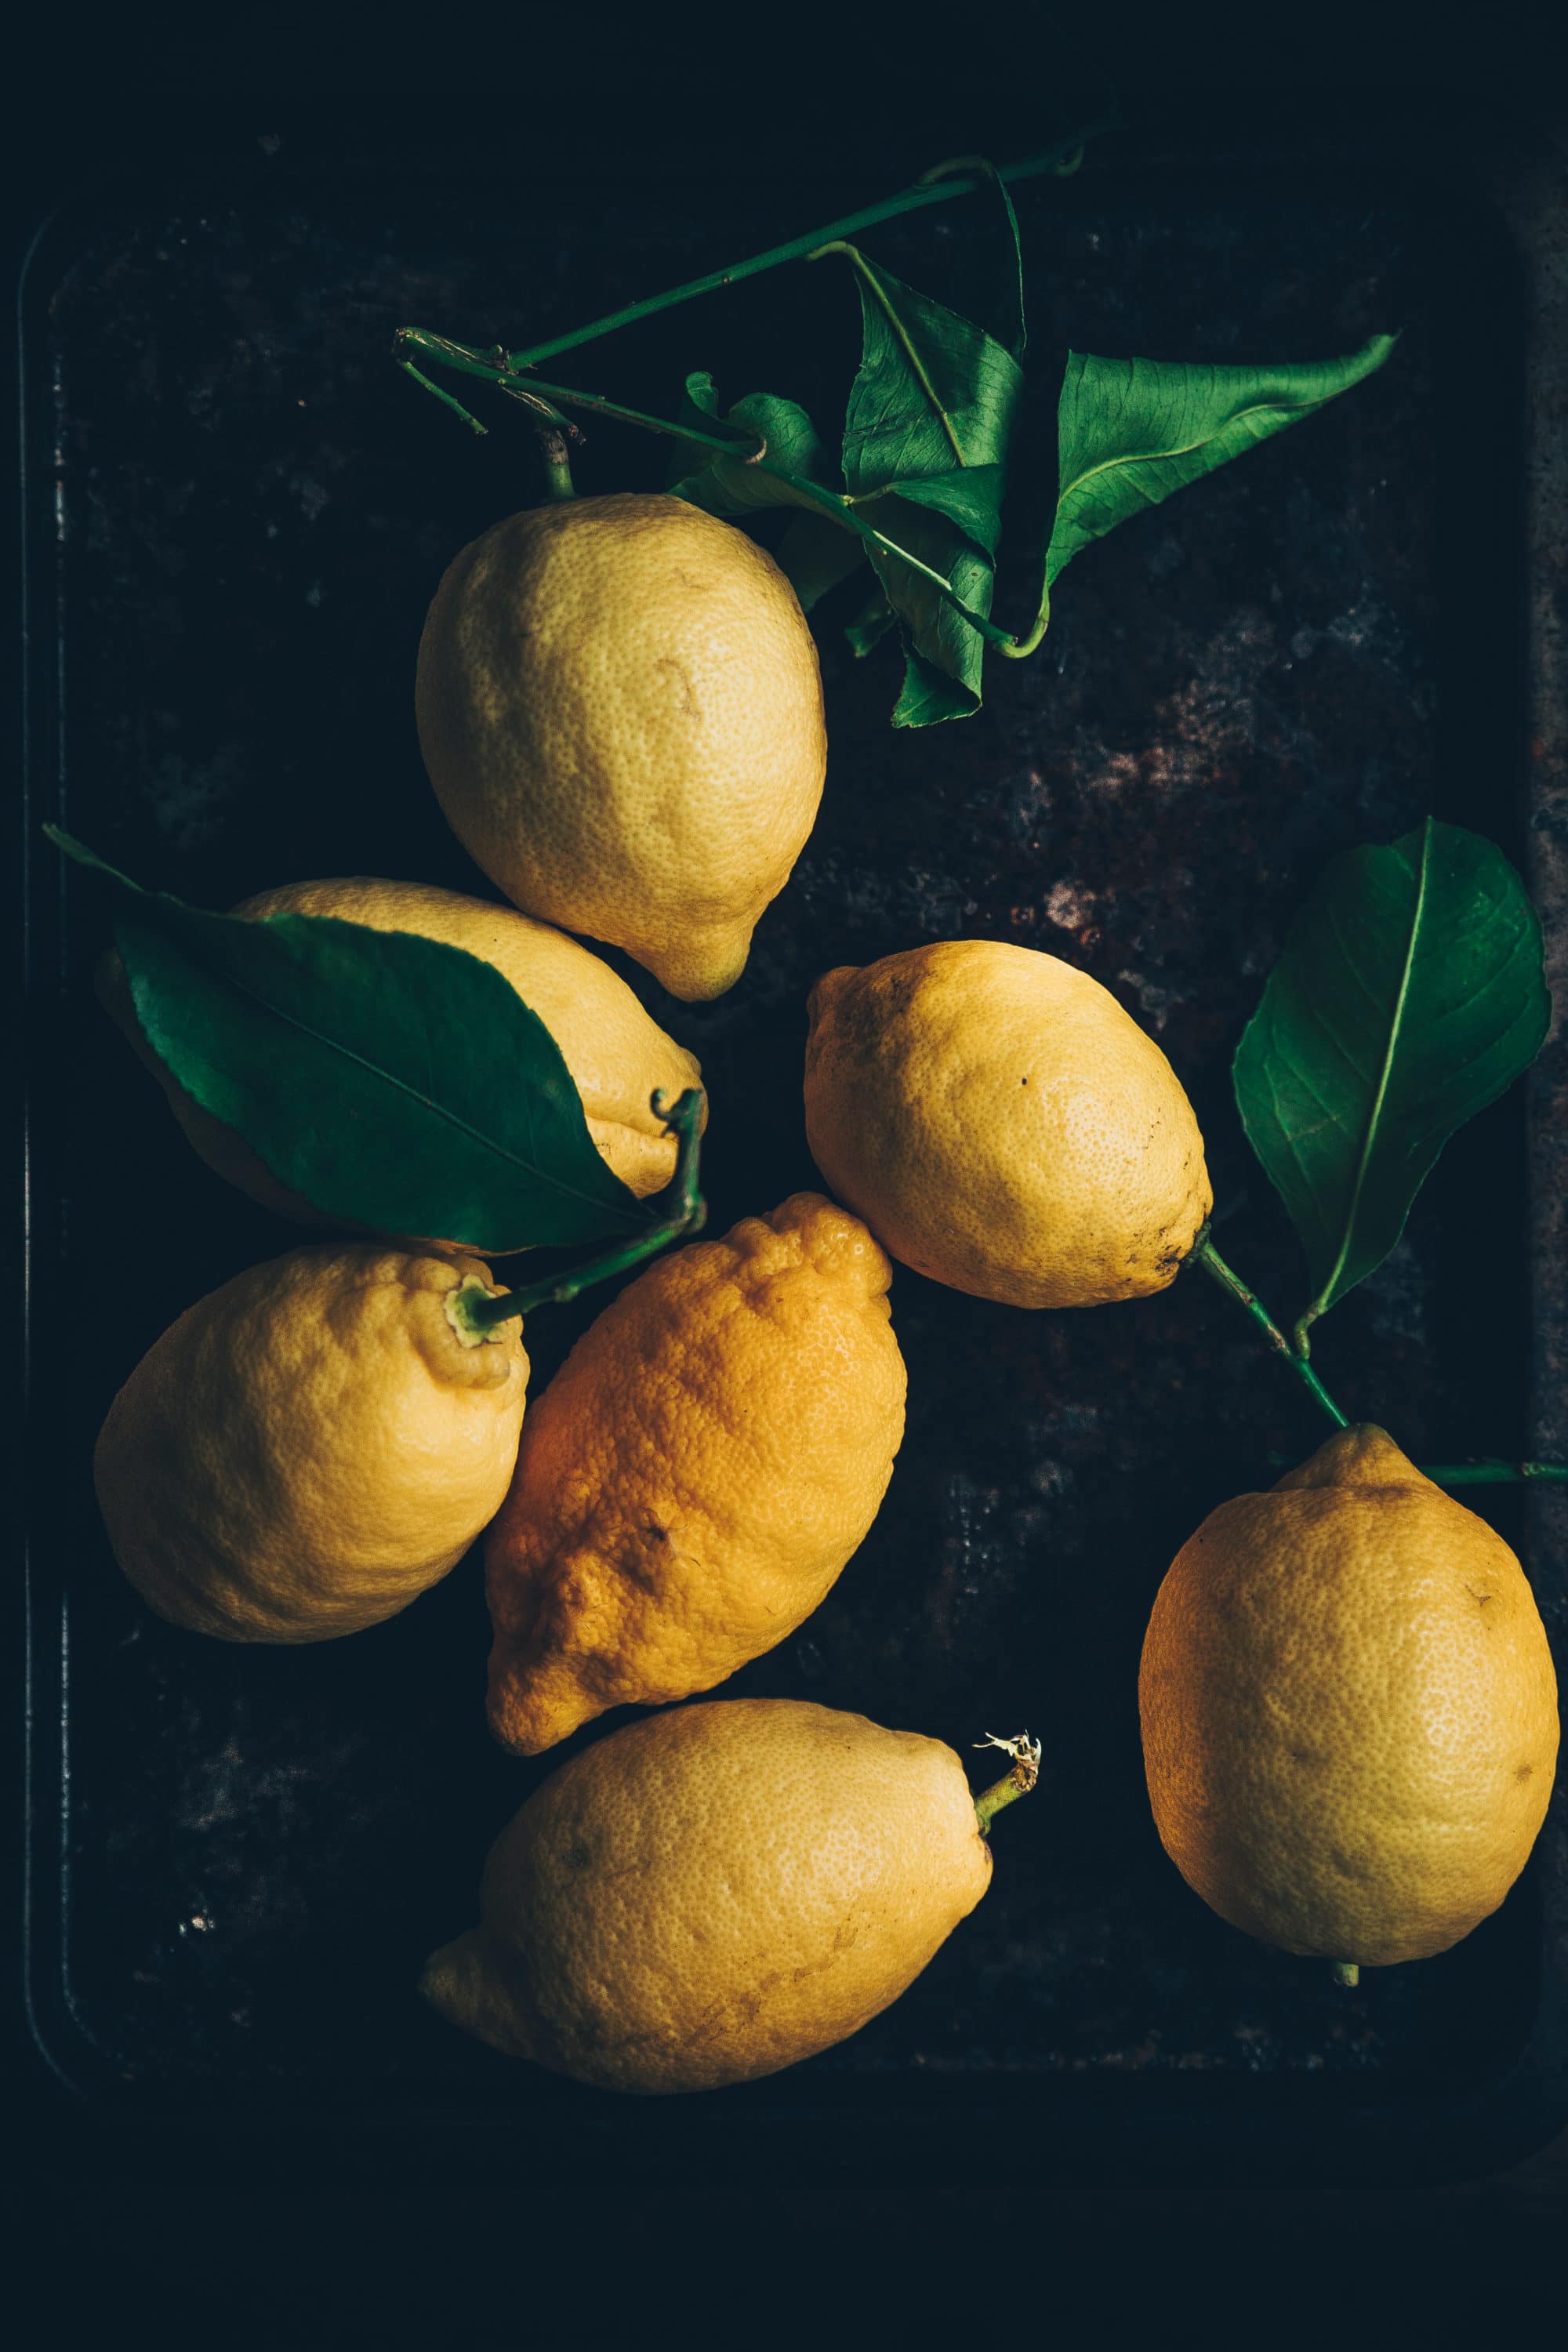 citrons confits recette